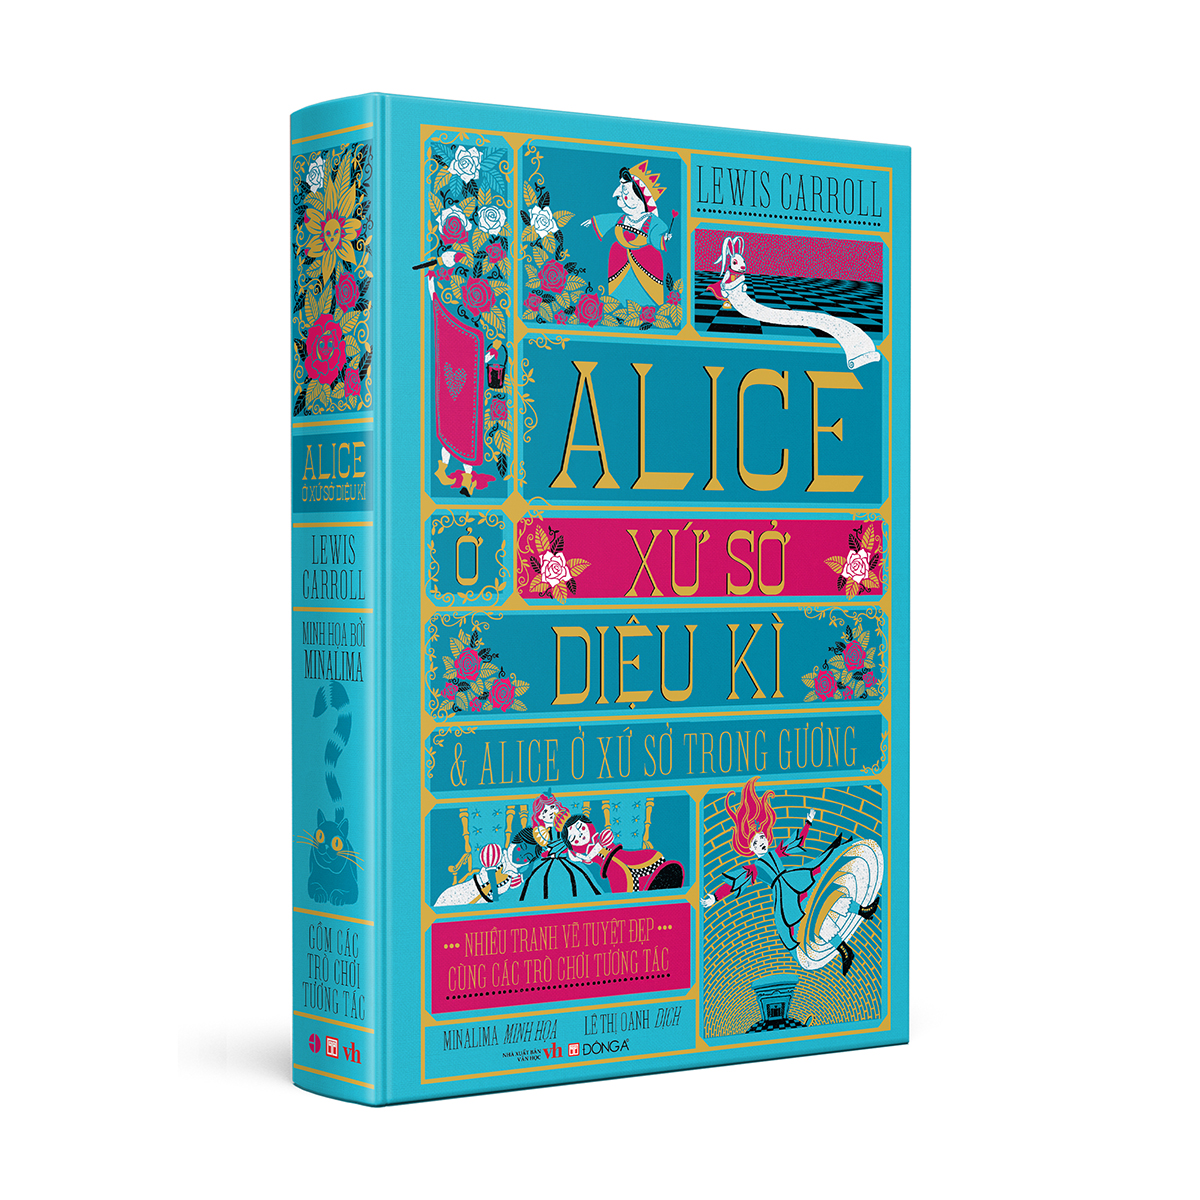 Boxset ba tác phẩm kinh điển dành cho thiếu nhi (Peter Pan, Alice ở xứ sở diệu kì và Alice ở xứ sở trong gương, Nàng tiên cá và những câu chuyện khác)